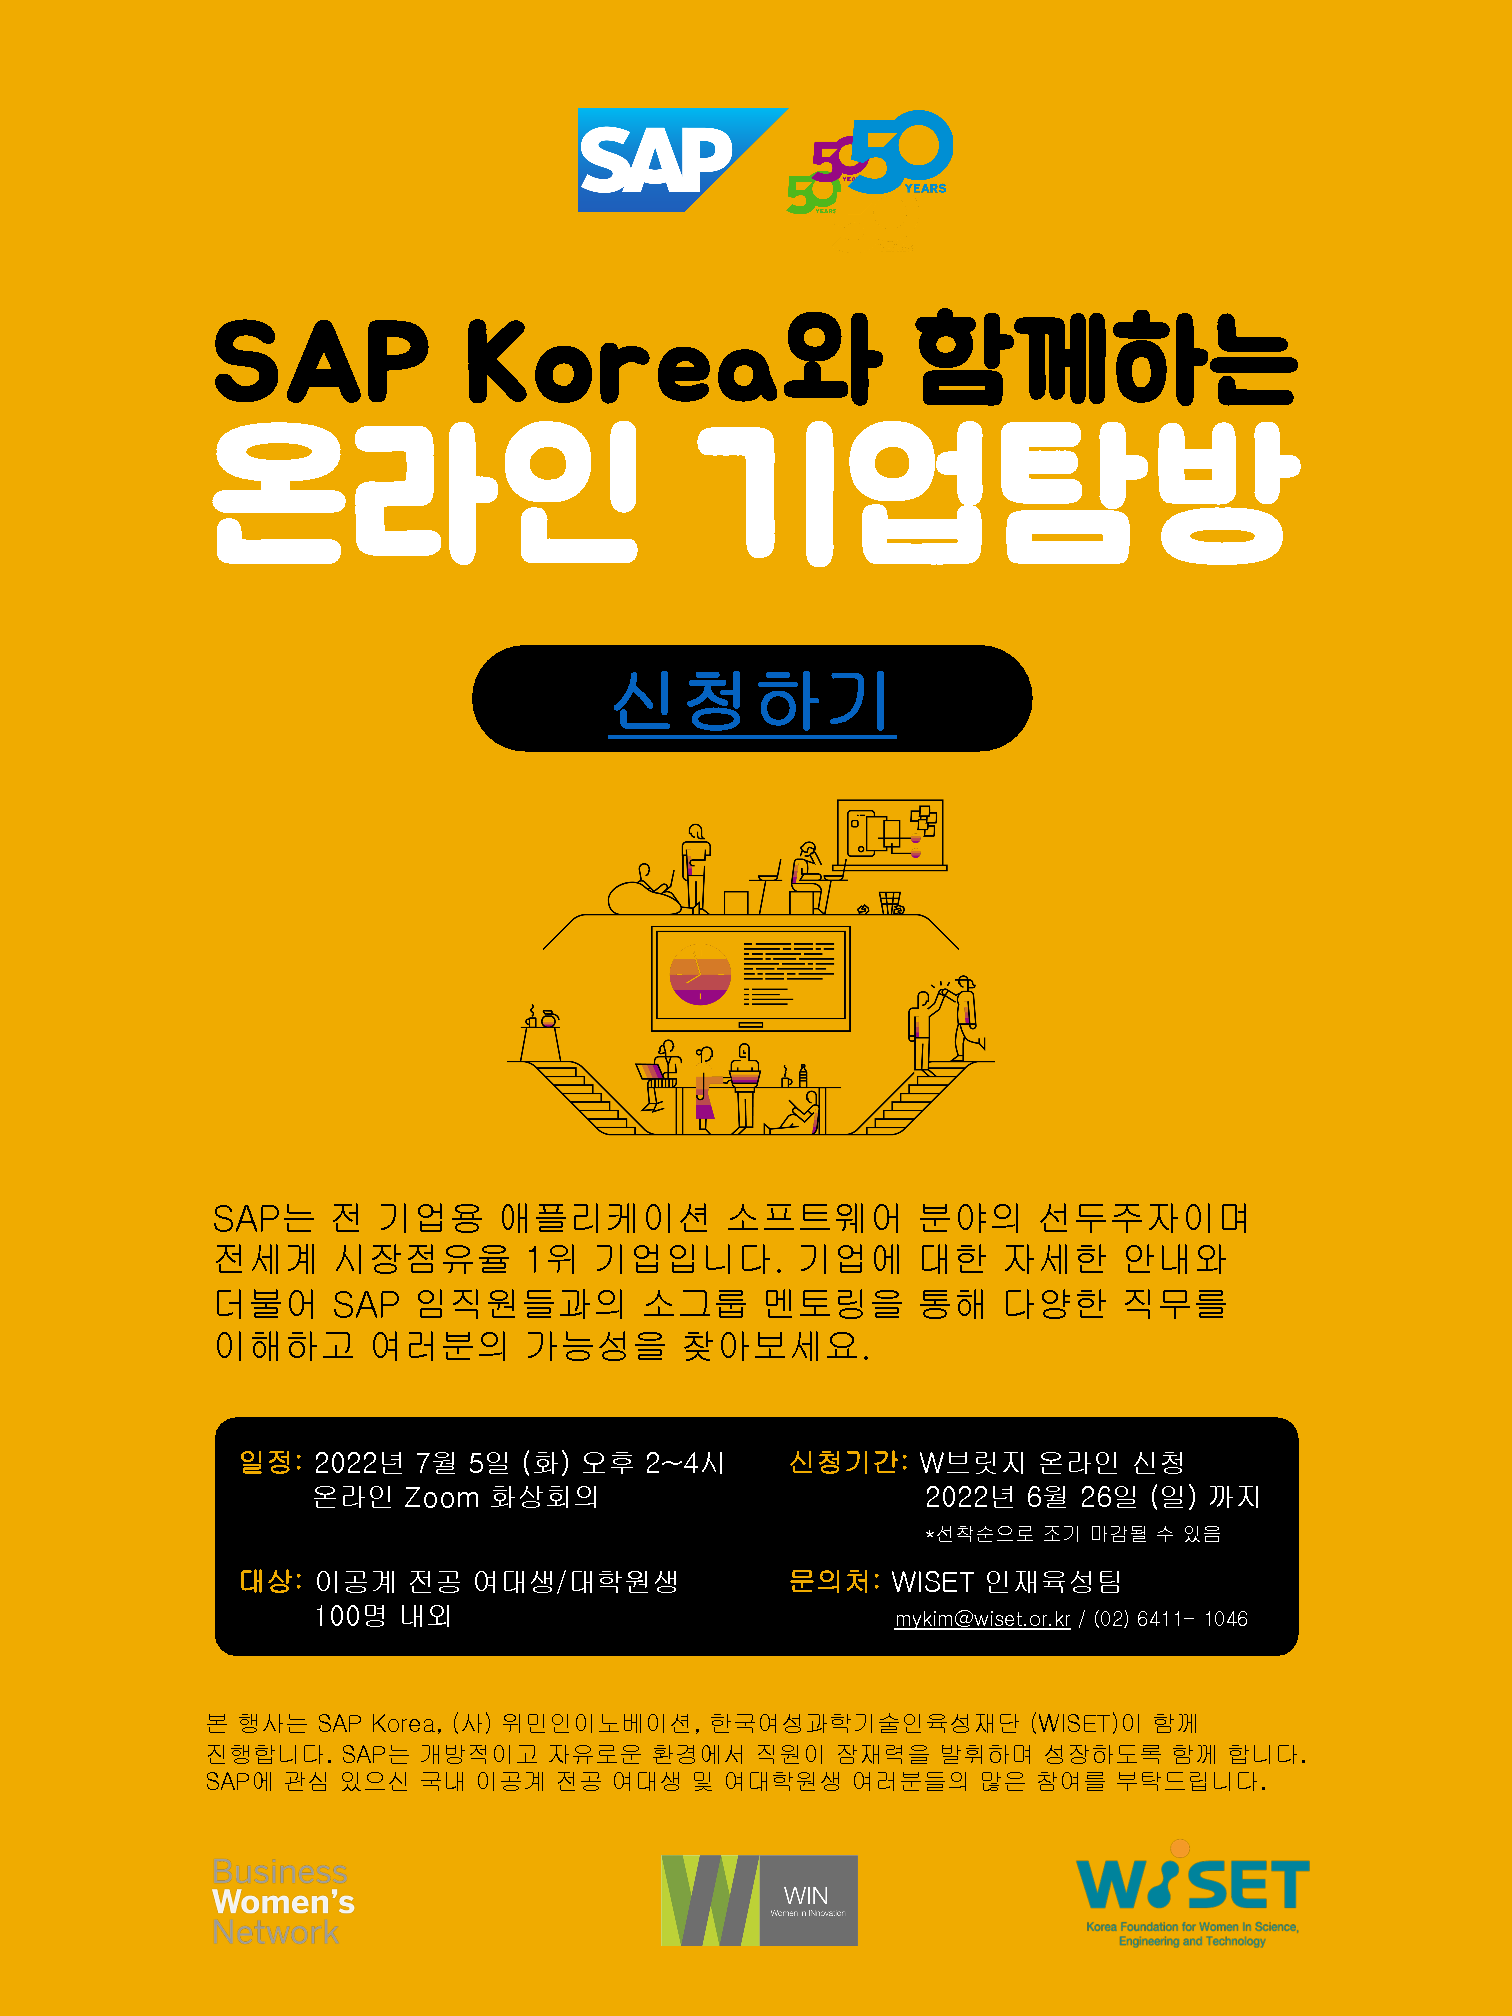 (별첨)_[EDM Poster] SAP Korea와 함께하는 온라인 글로벌 기업 탐방.png